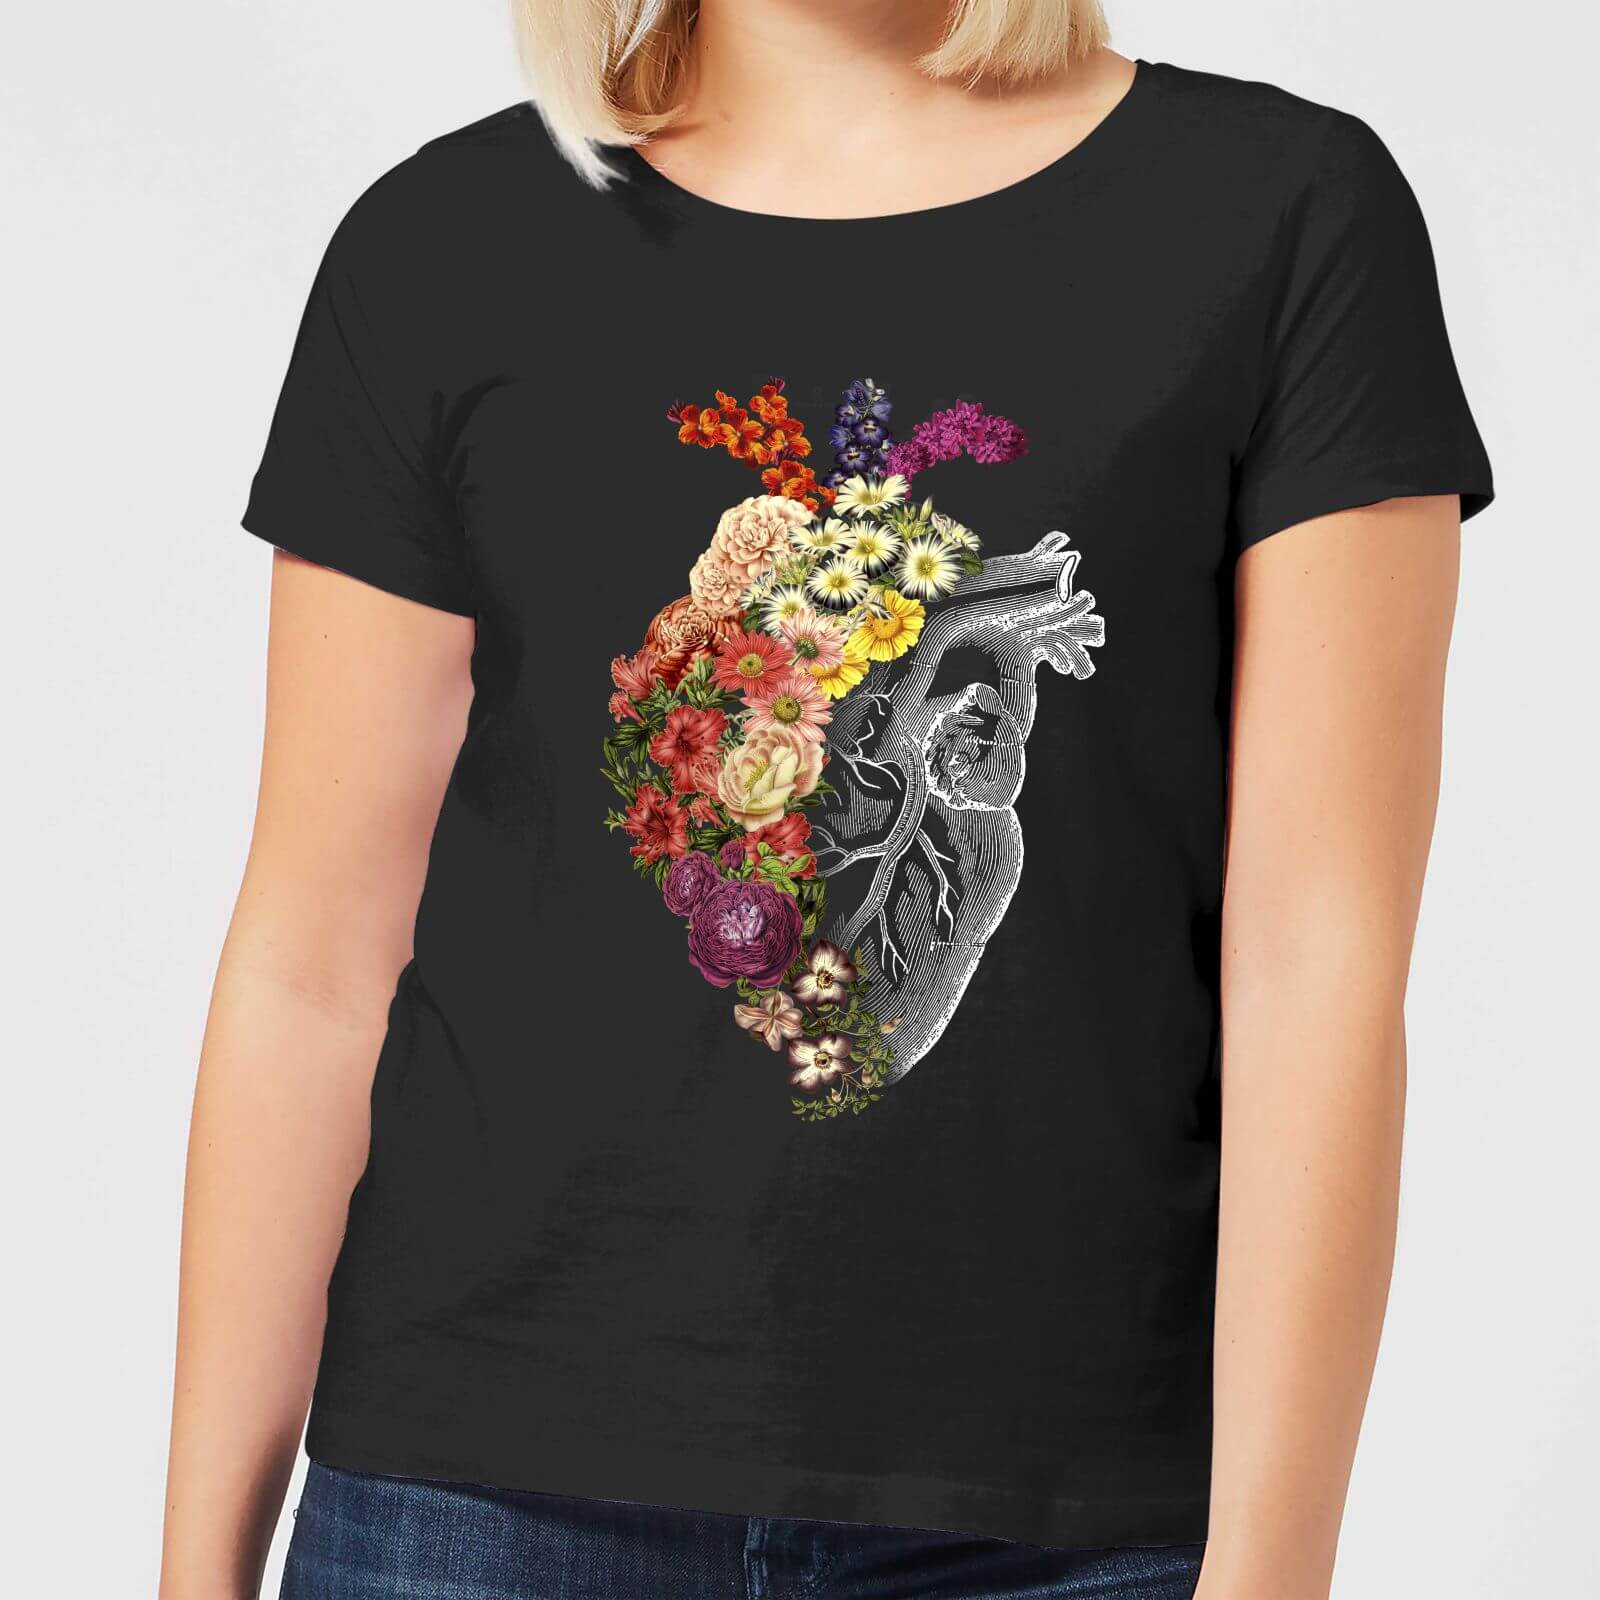 Flower Heart Spring Women's T-Shirt - Black - S - Black